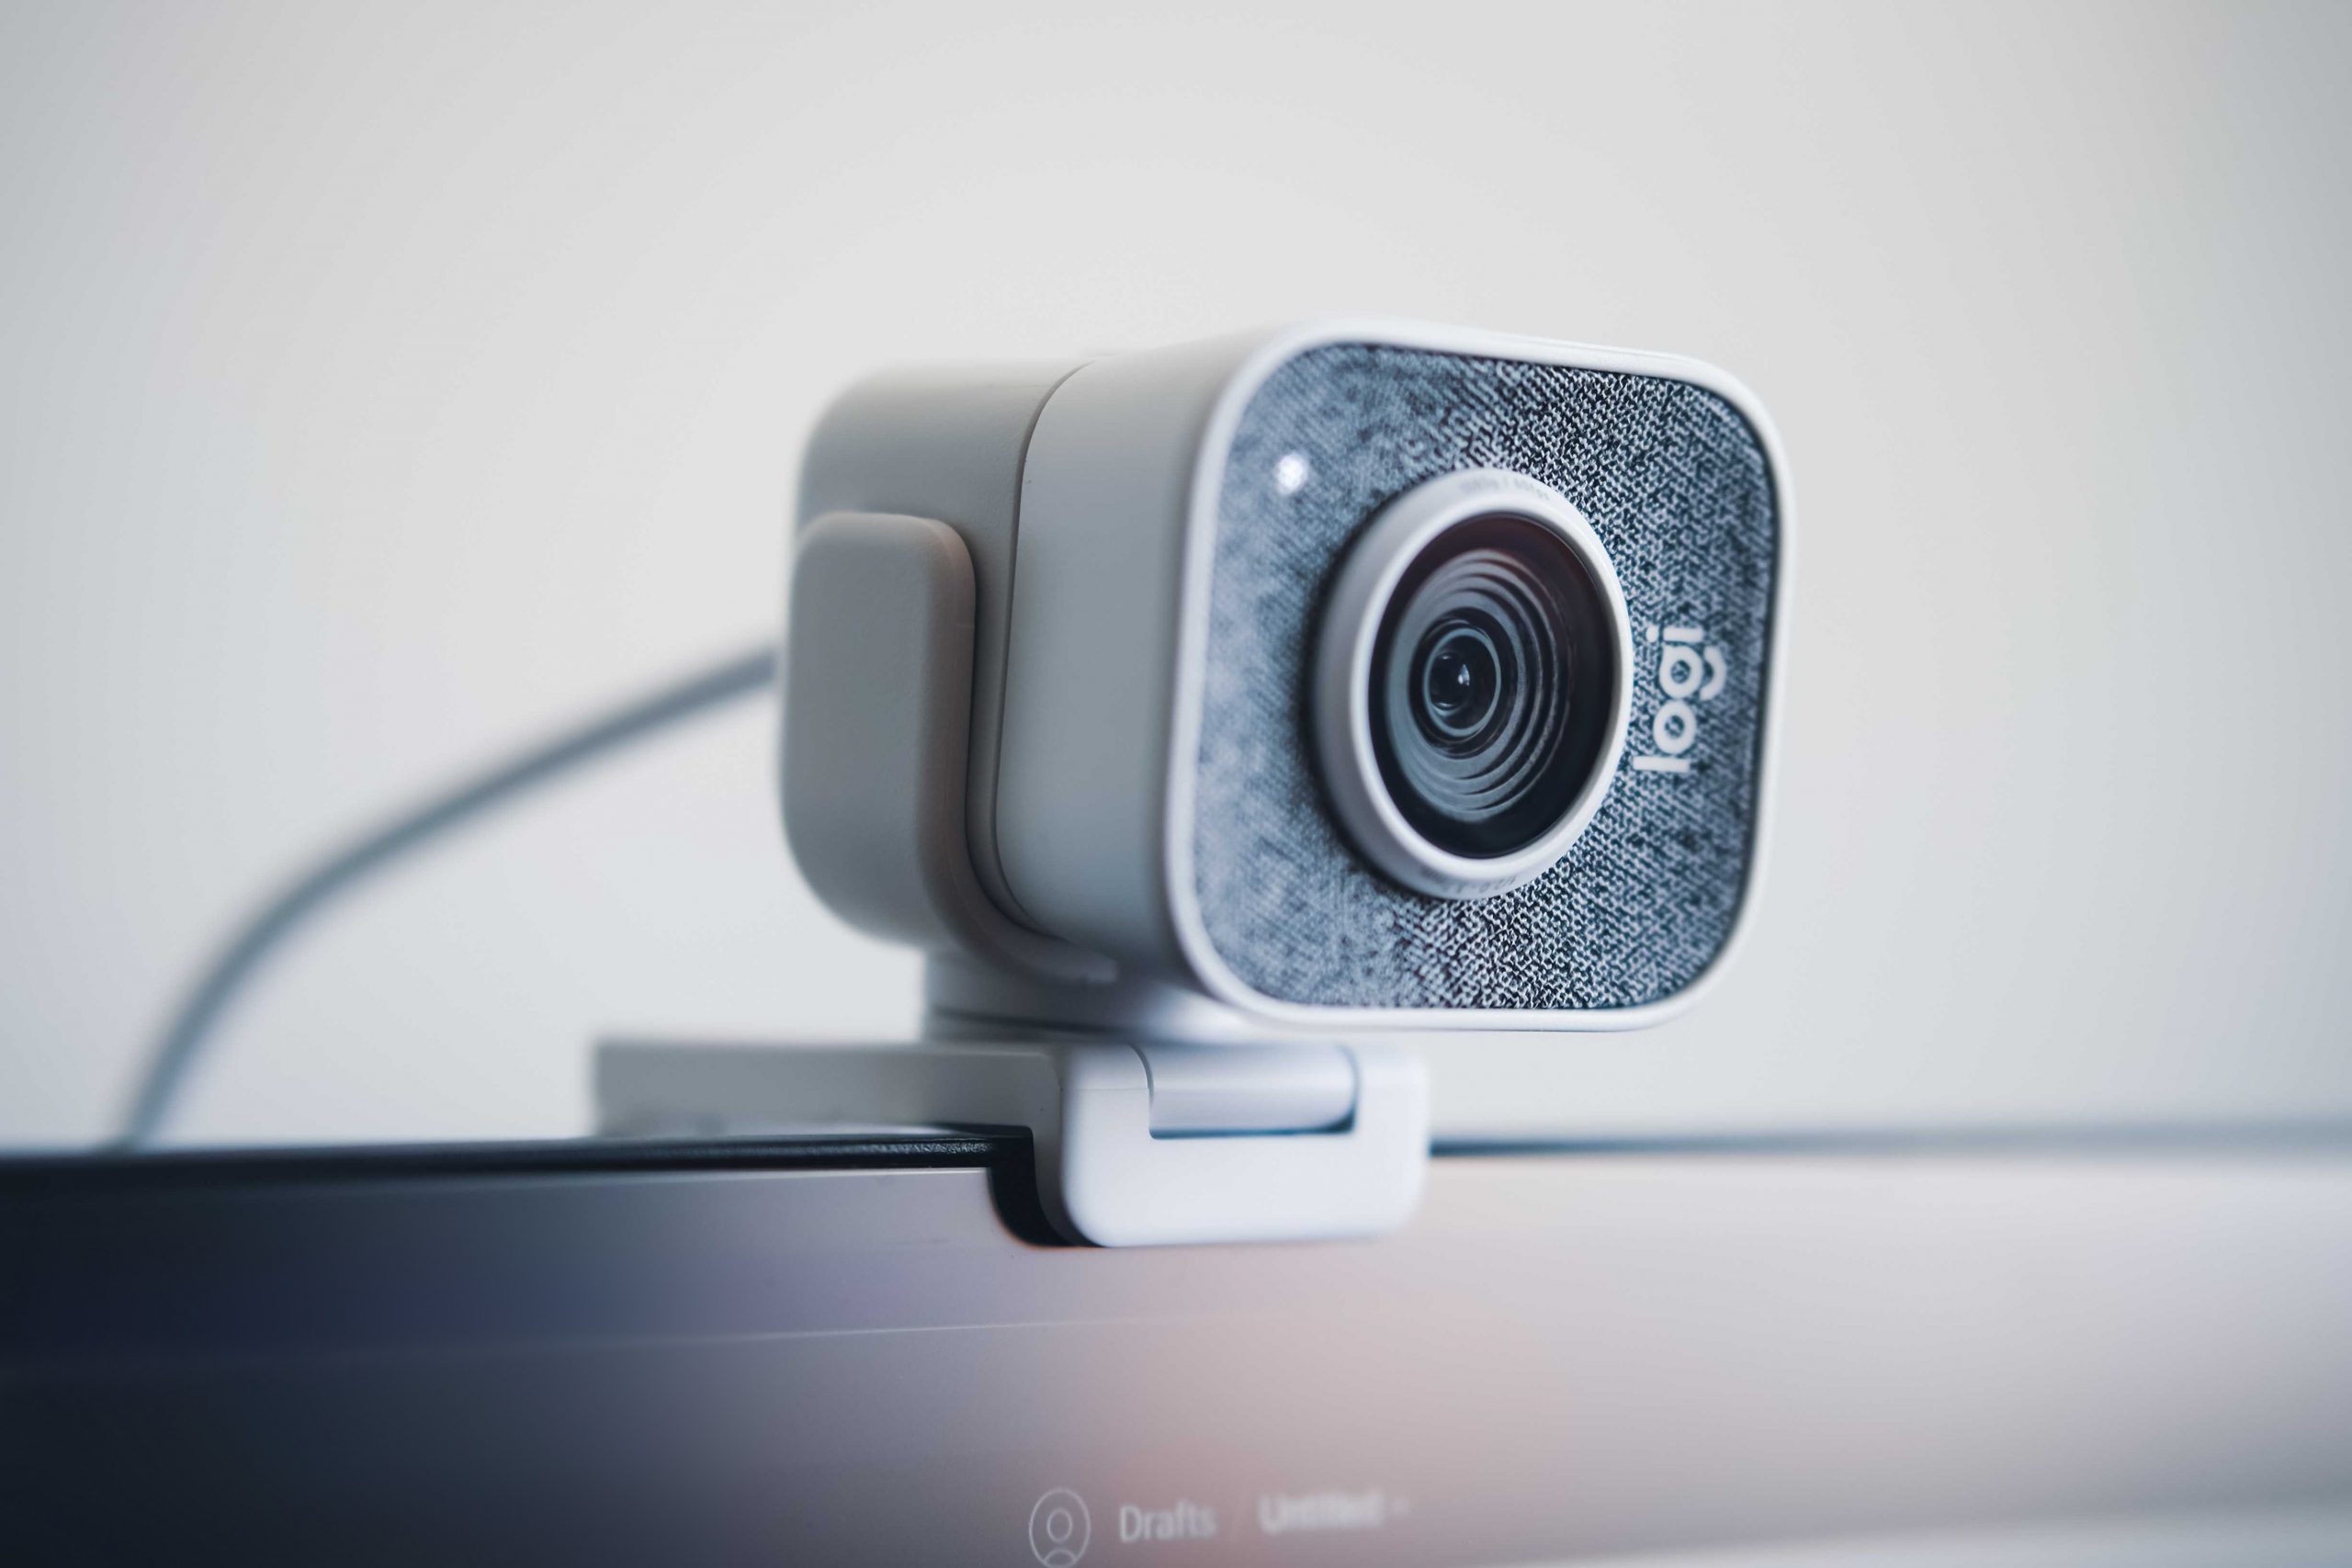 Comment savoir si ma webcam a été piratée ?